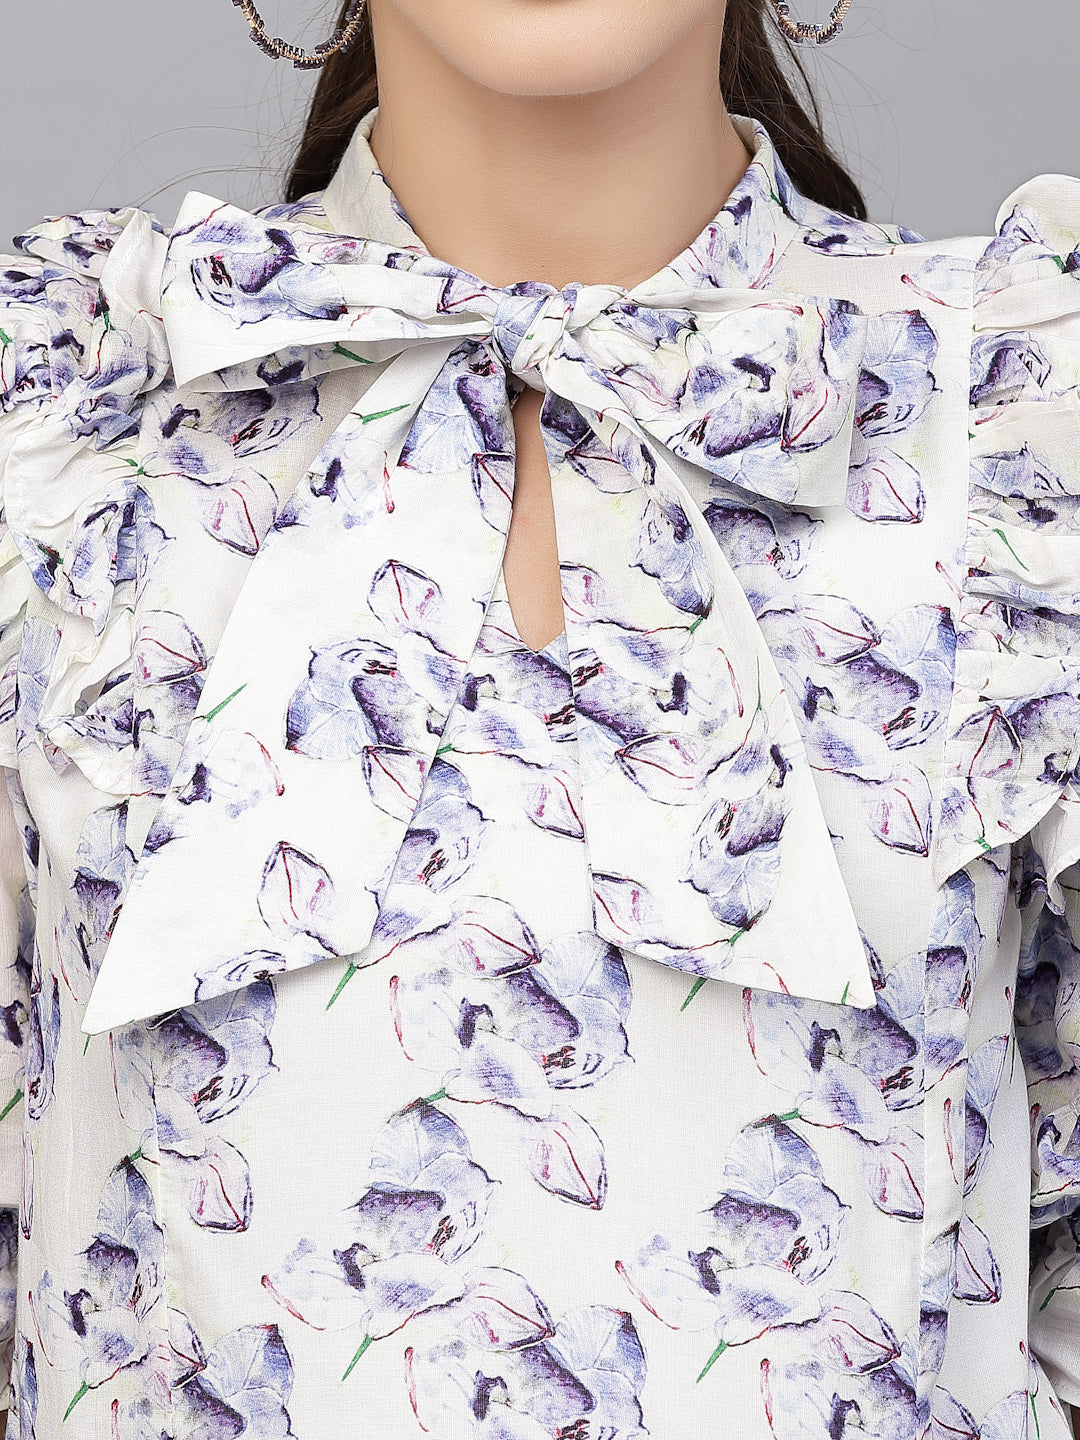 Valbone Women’s White & Purple Floral Printed Casual Wear Rayon Half Sleeves Tie Pattern Top